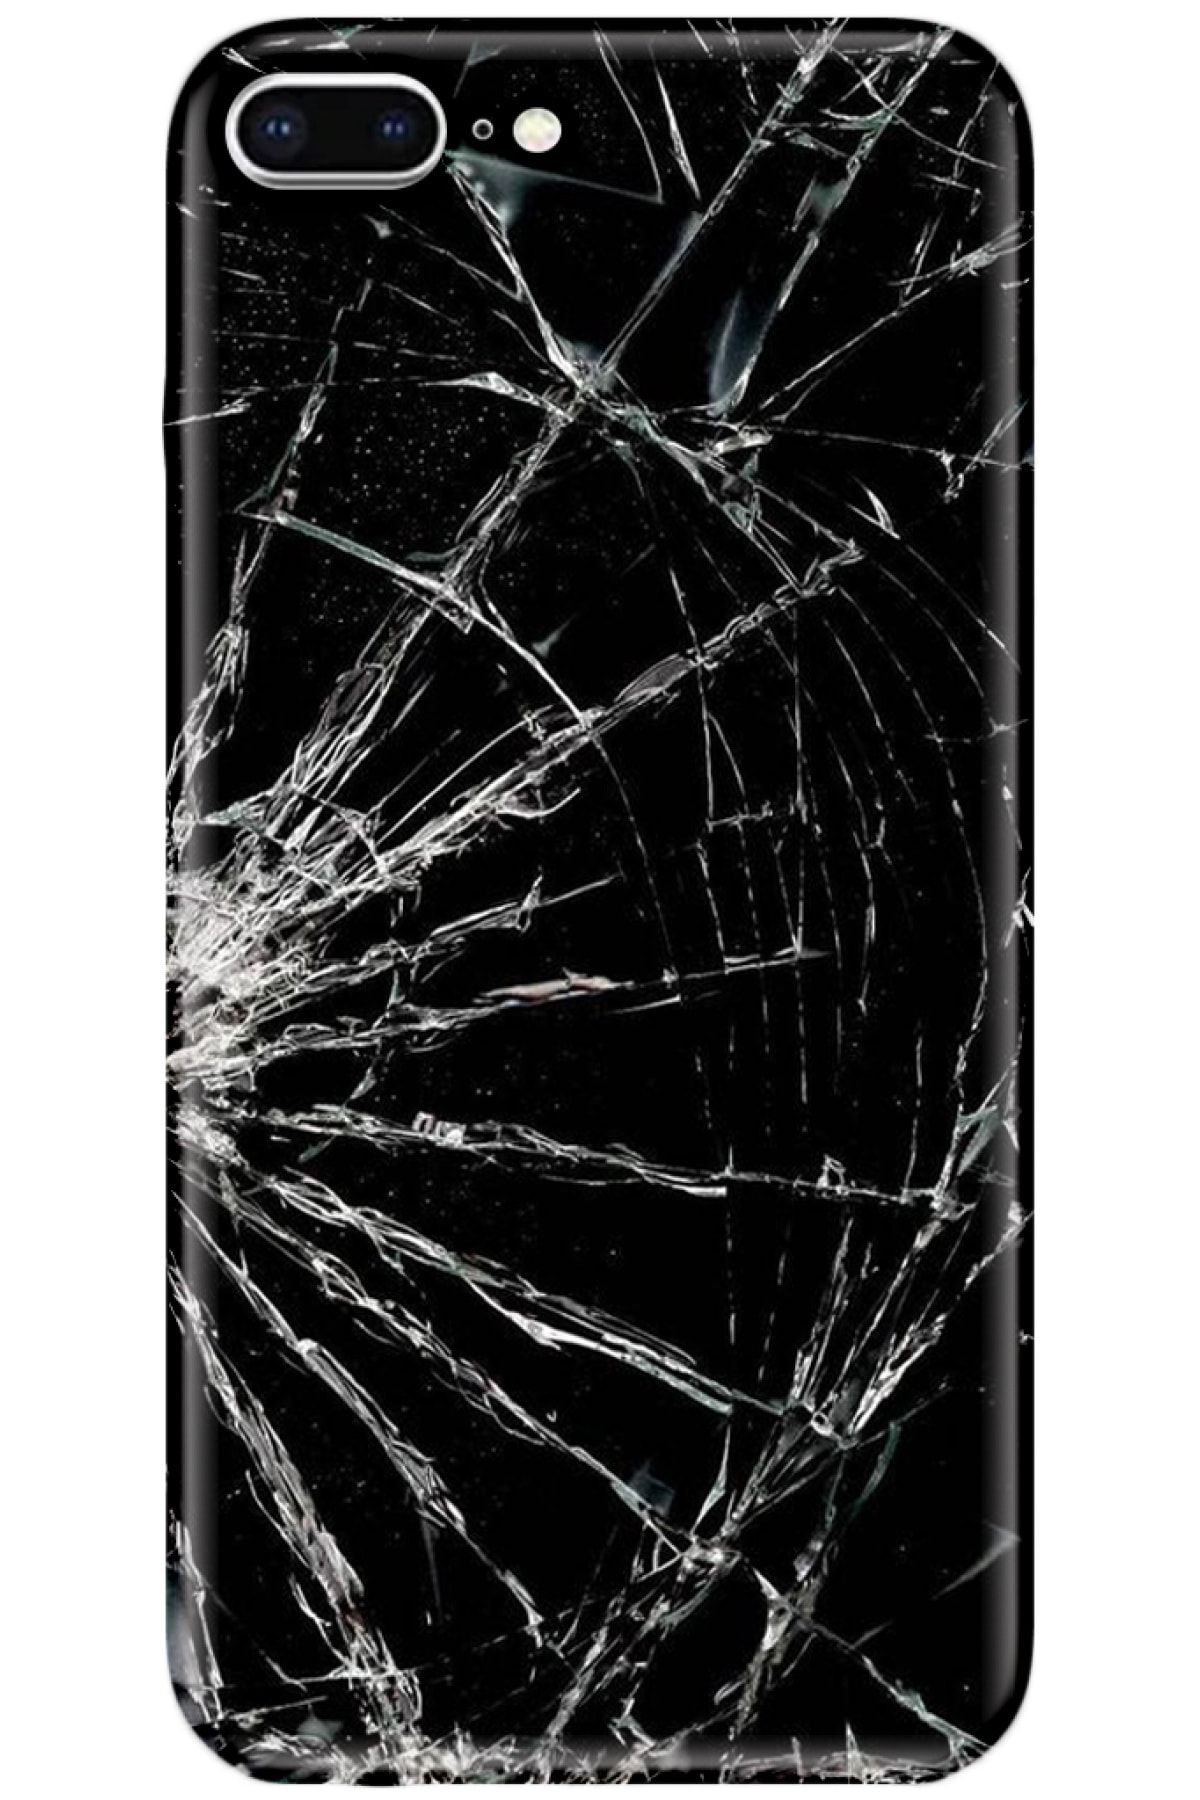 Turkiyecepaksesuar Apple Iphone 7 Plus Kılıf Silikon Baskılı Desenli Arka Kapak